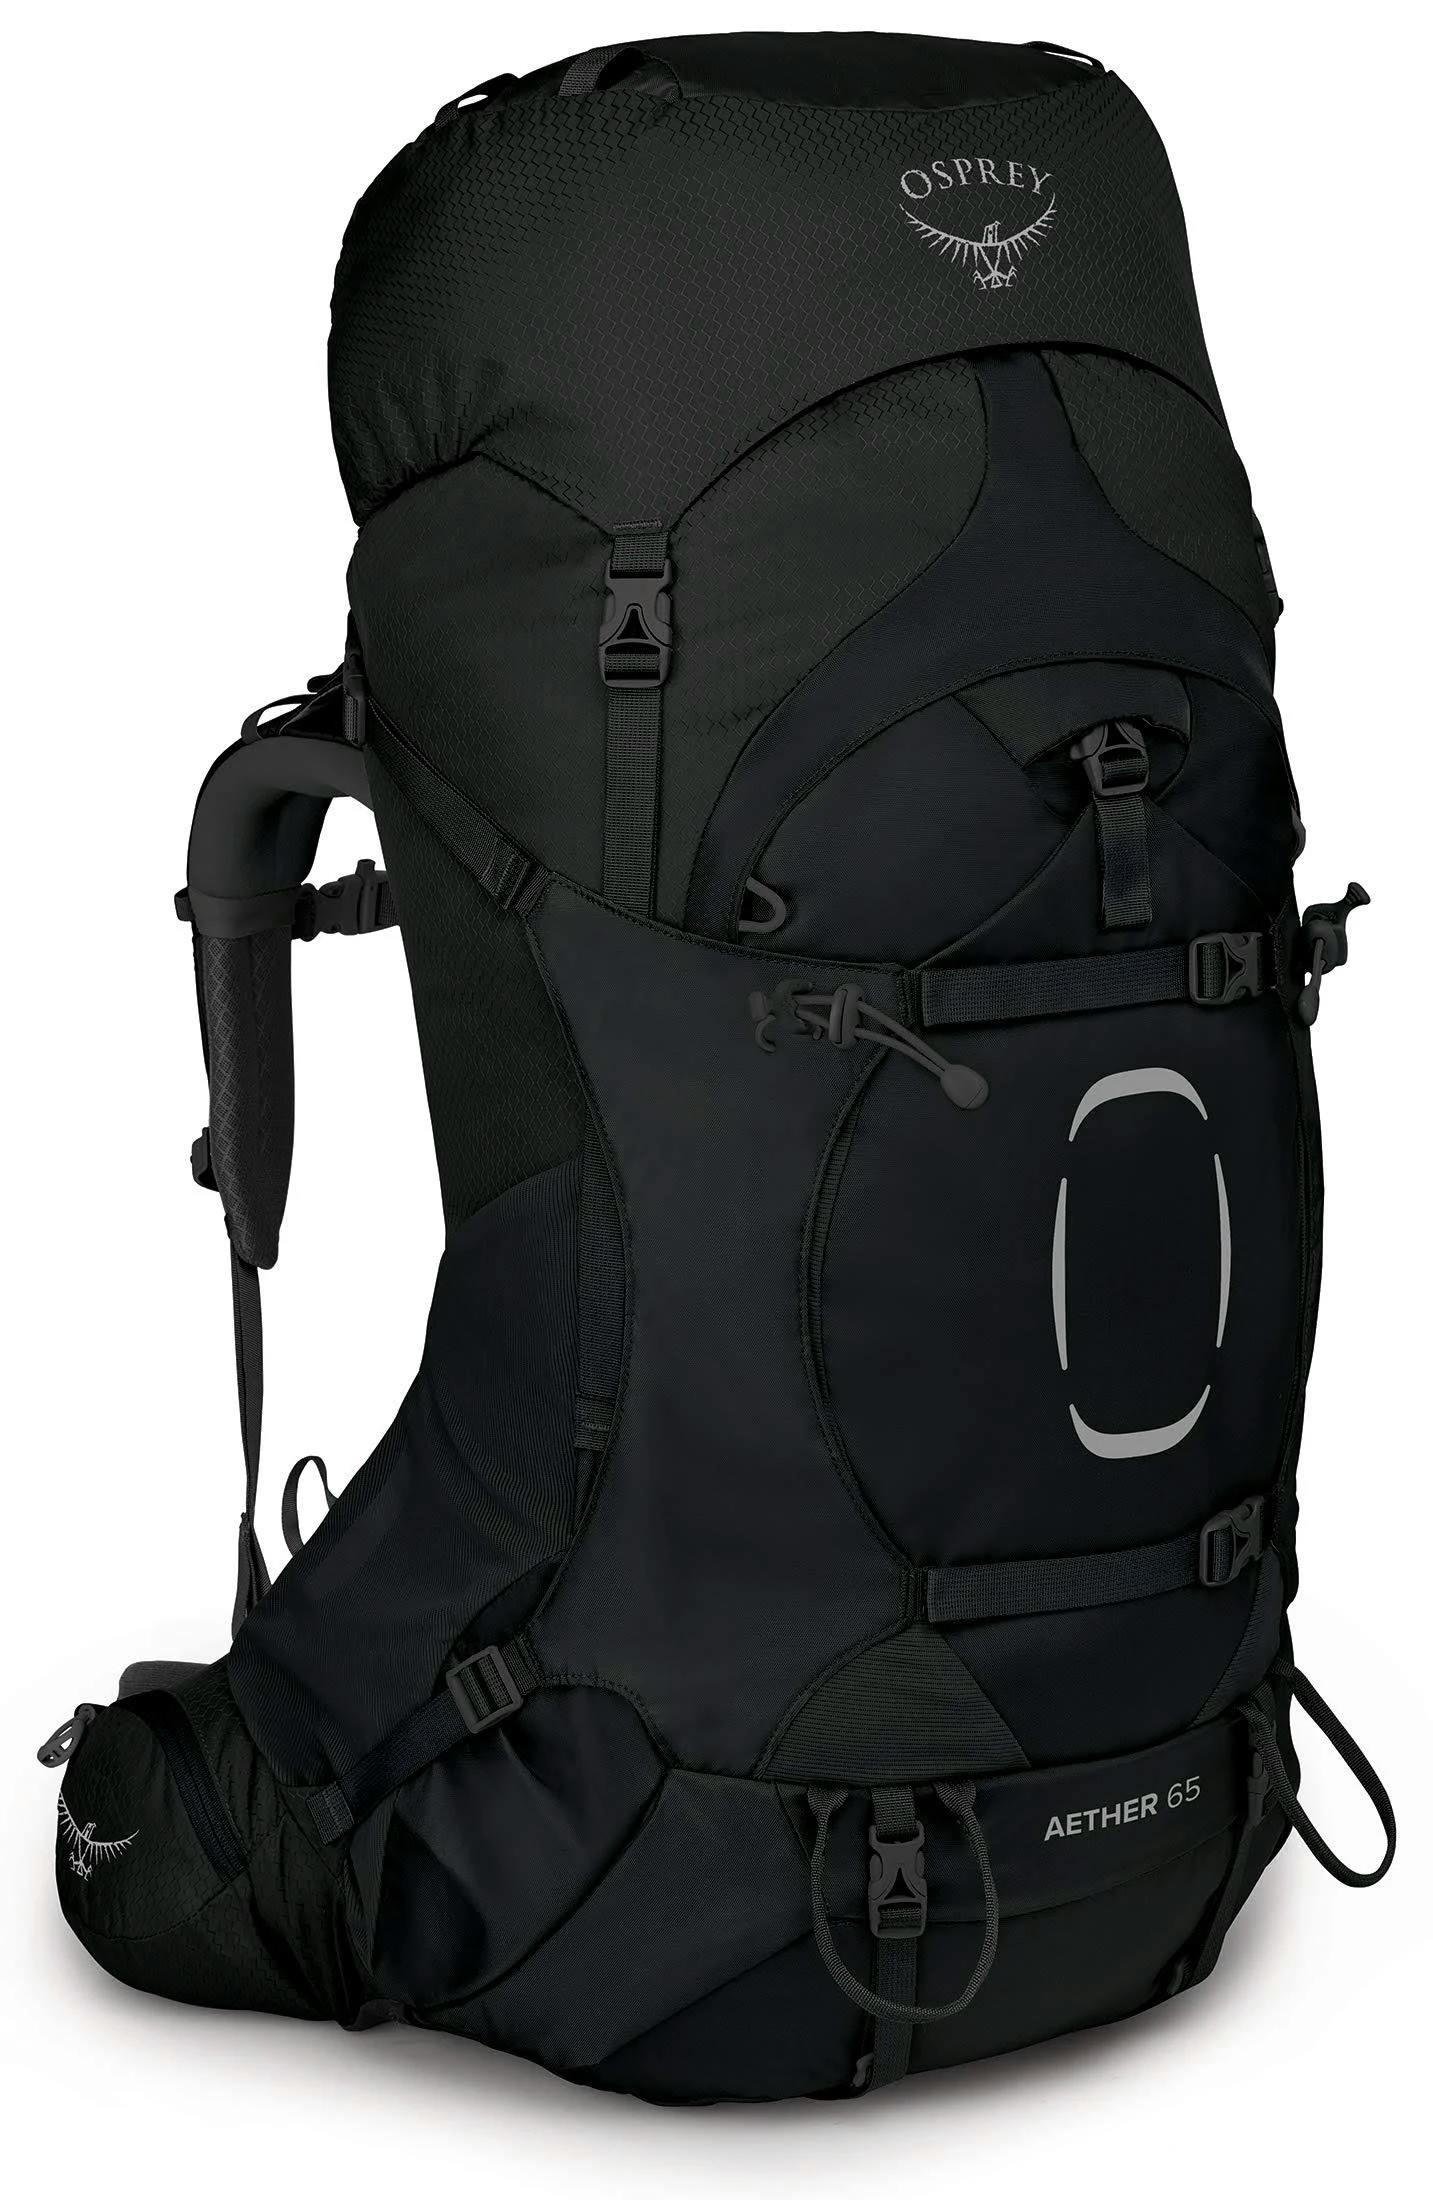 Osprey Aether 65 Backpack